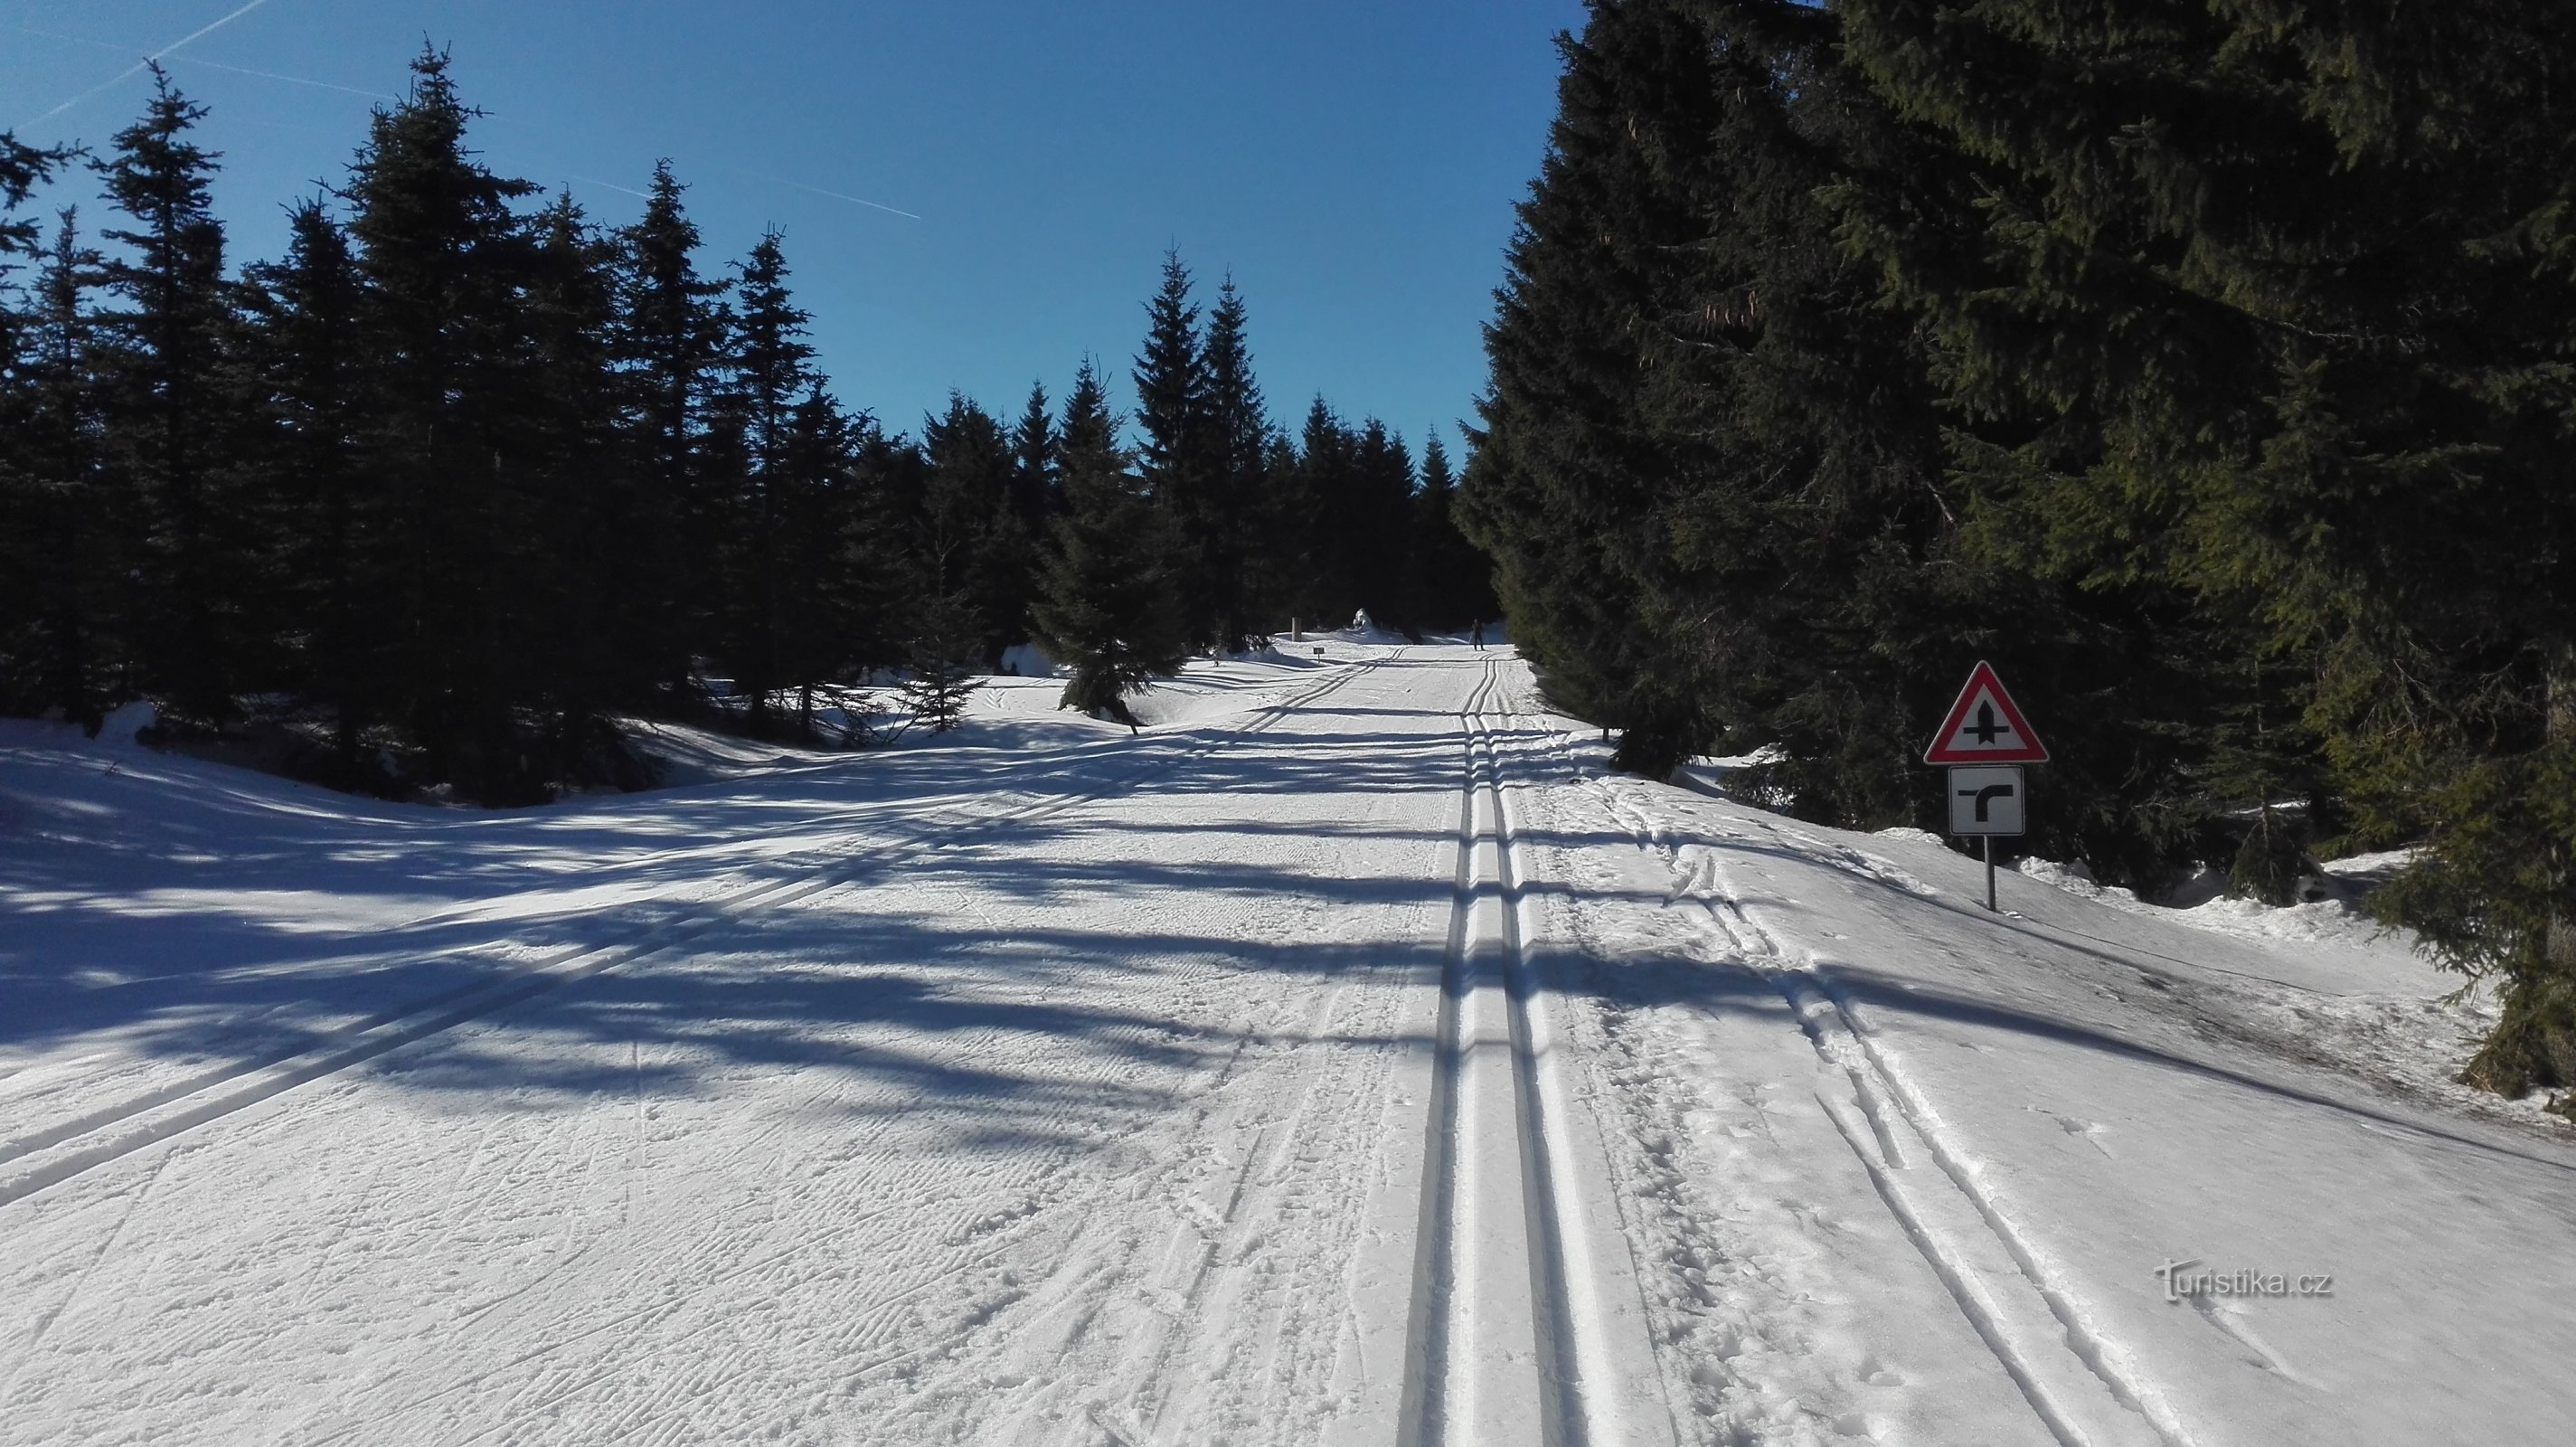 Pistes de ski de fond sur la route en contrebas de Meluzína.